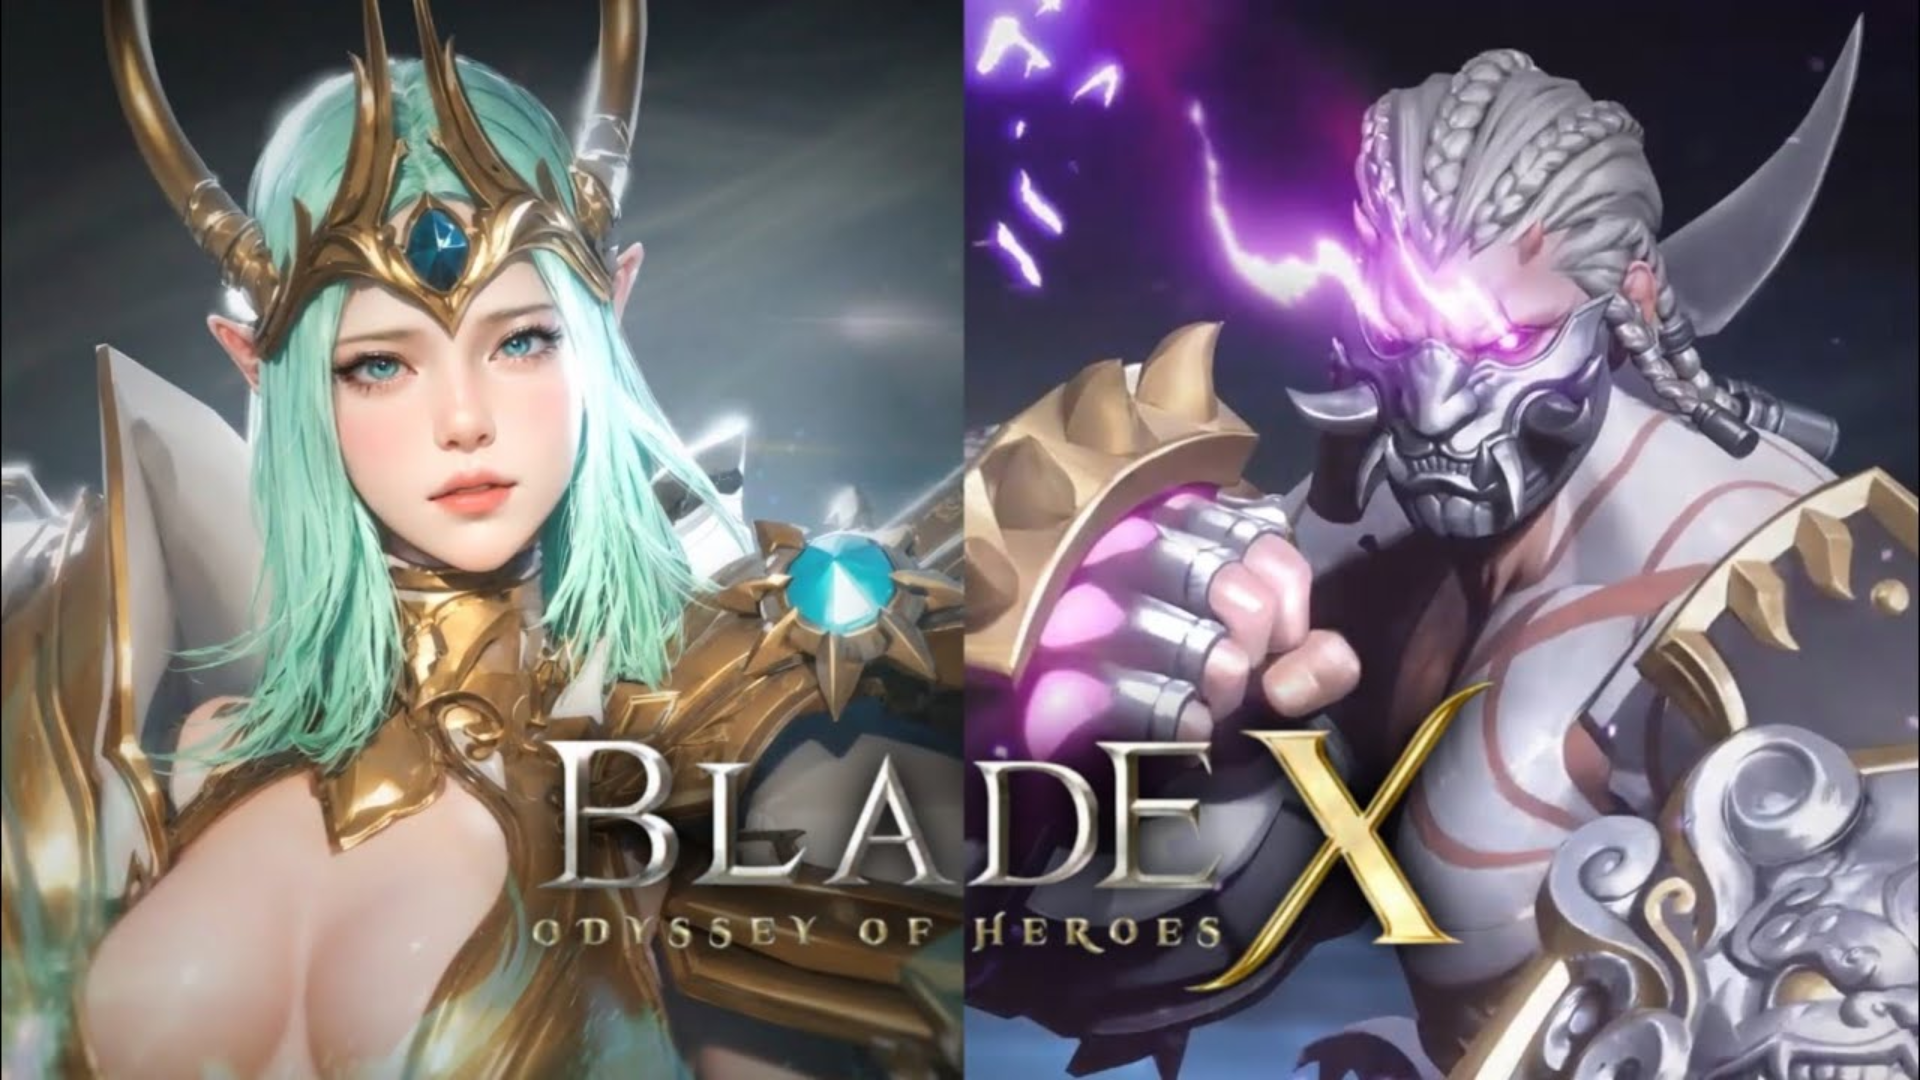 Banner of Blade X: Одиссея героев 1.1.0